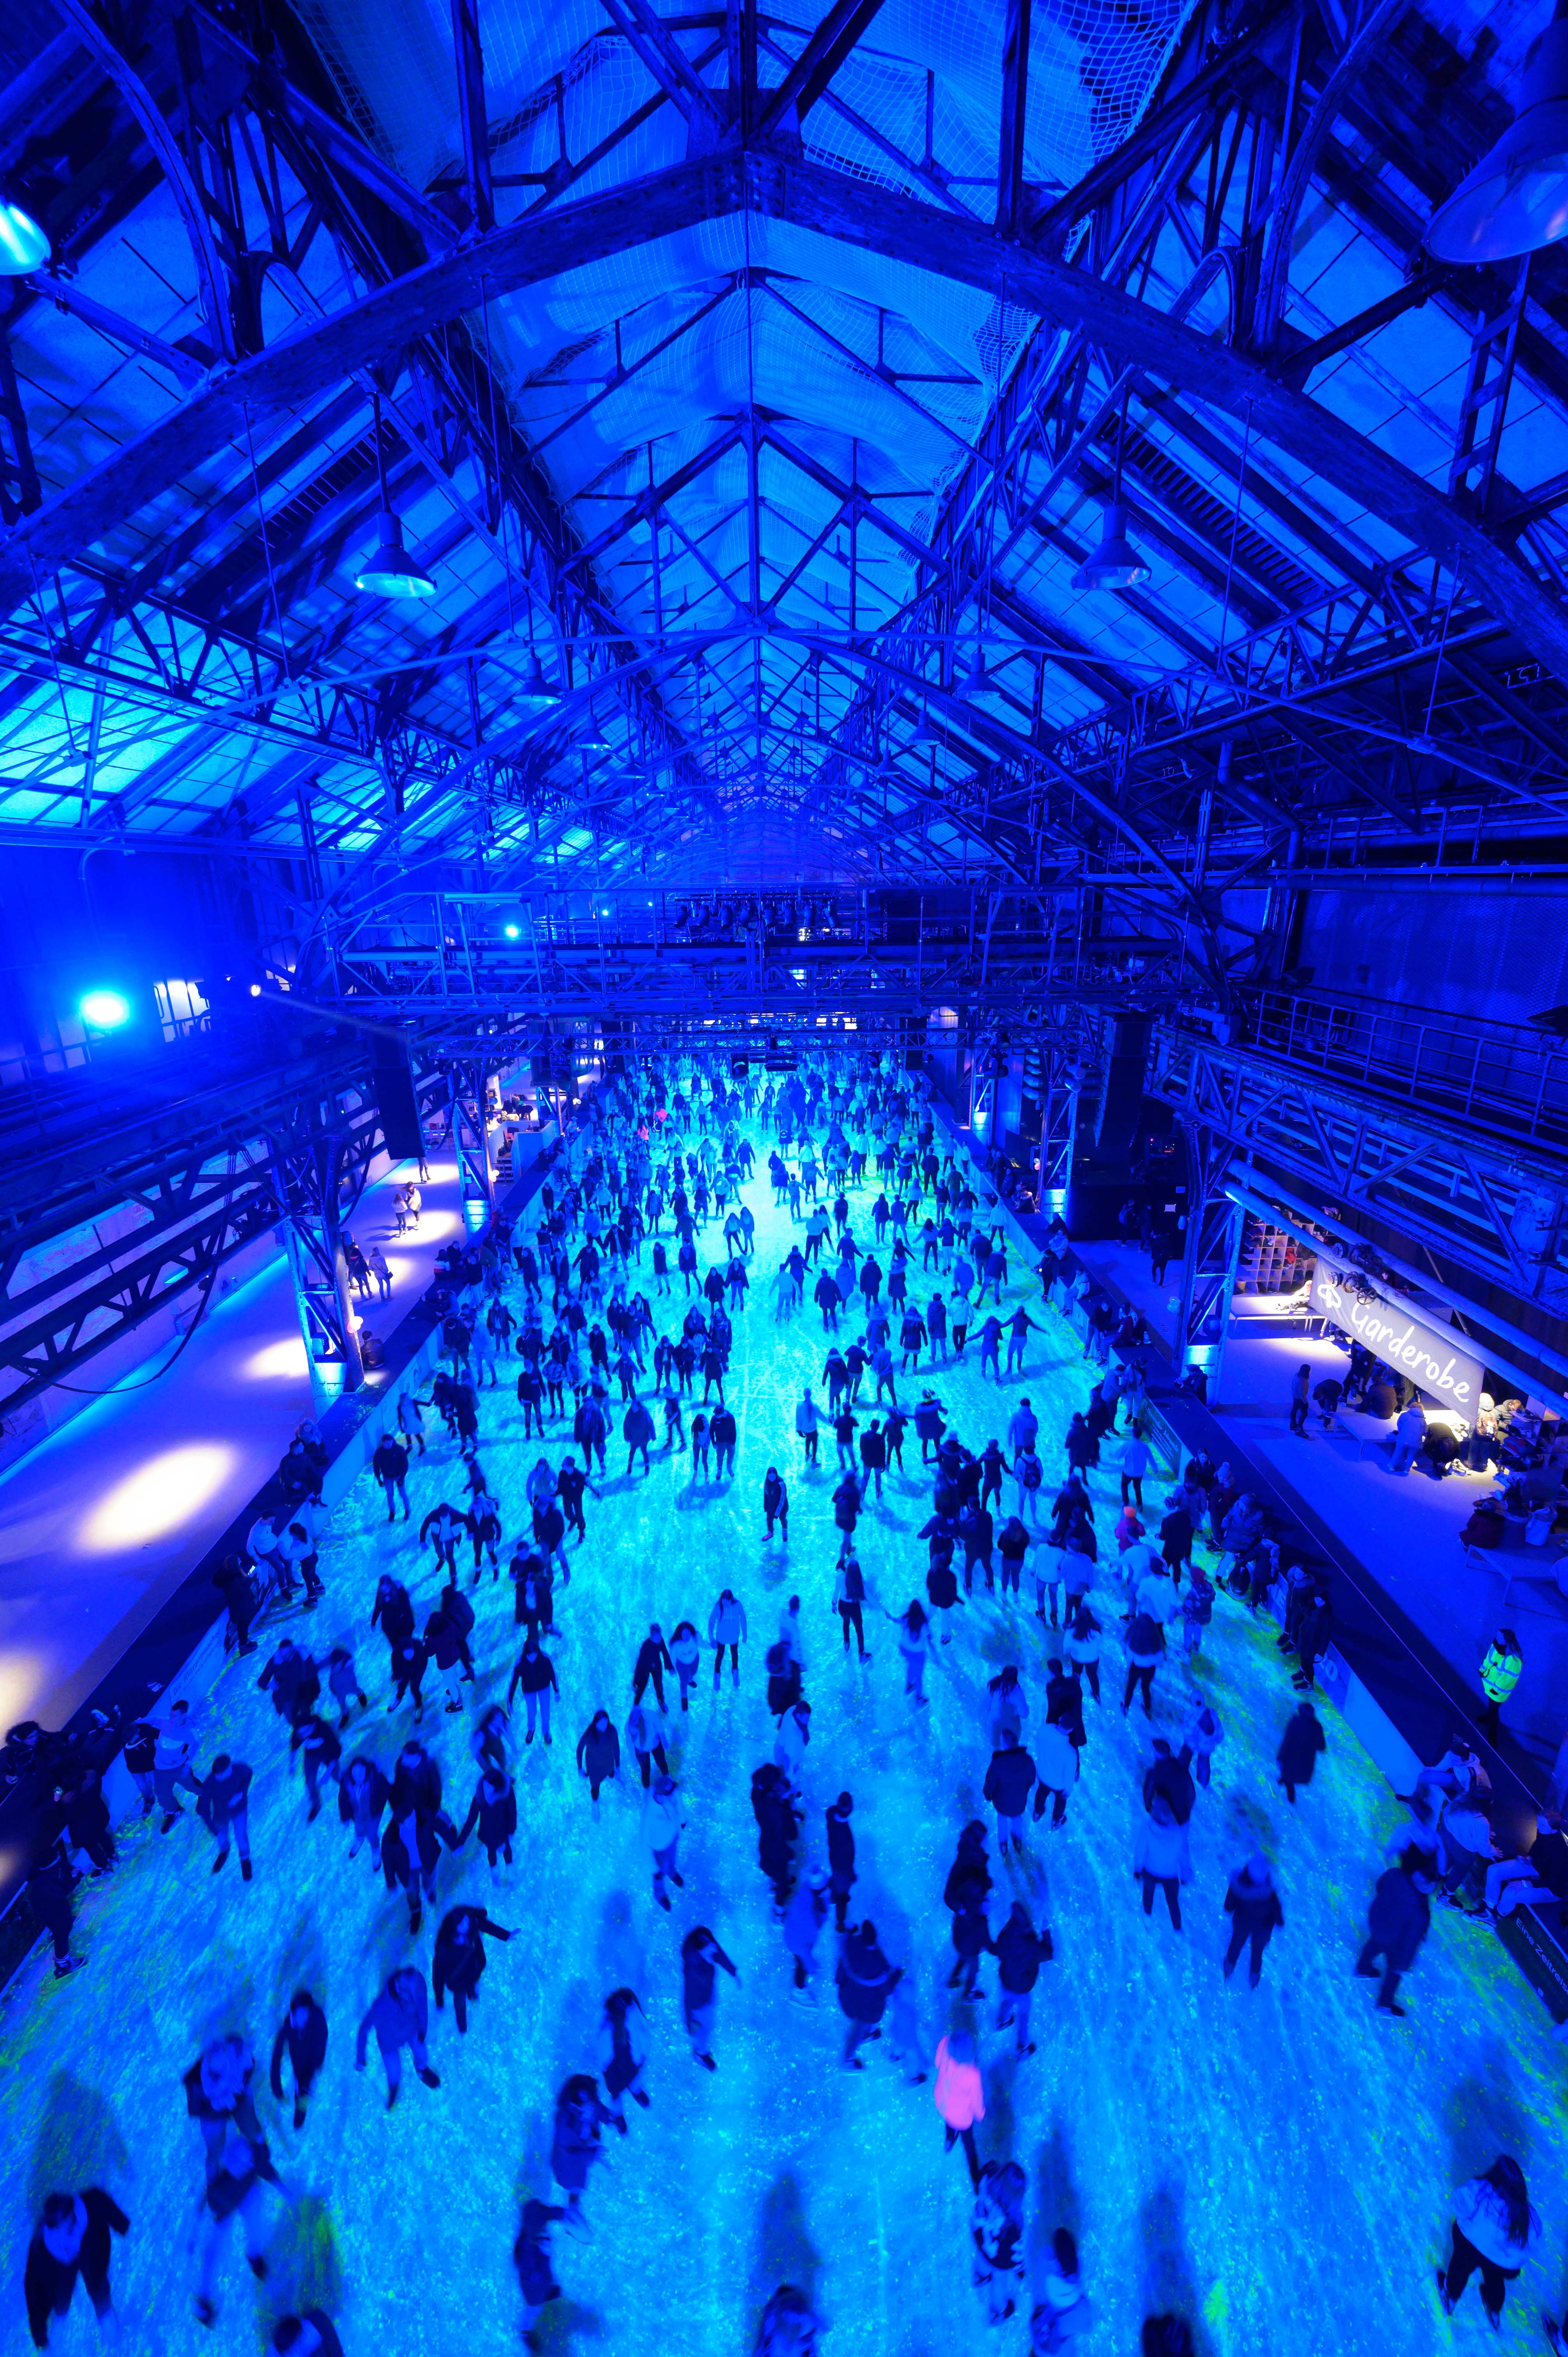 Blick auf die gut besuchte Eisbahn des EisSalon Ruhr in der blau beleuchteten Halle 1 der Jahrhunderthalle Bochum.der Halle 